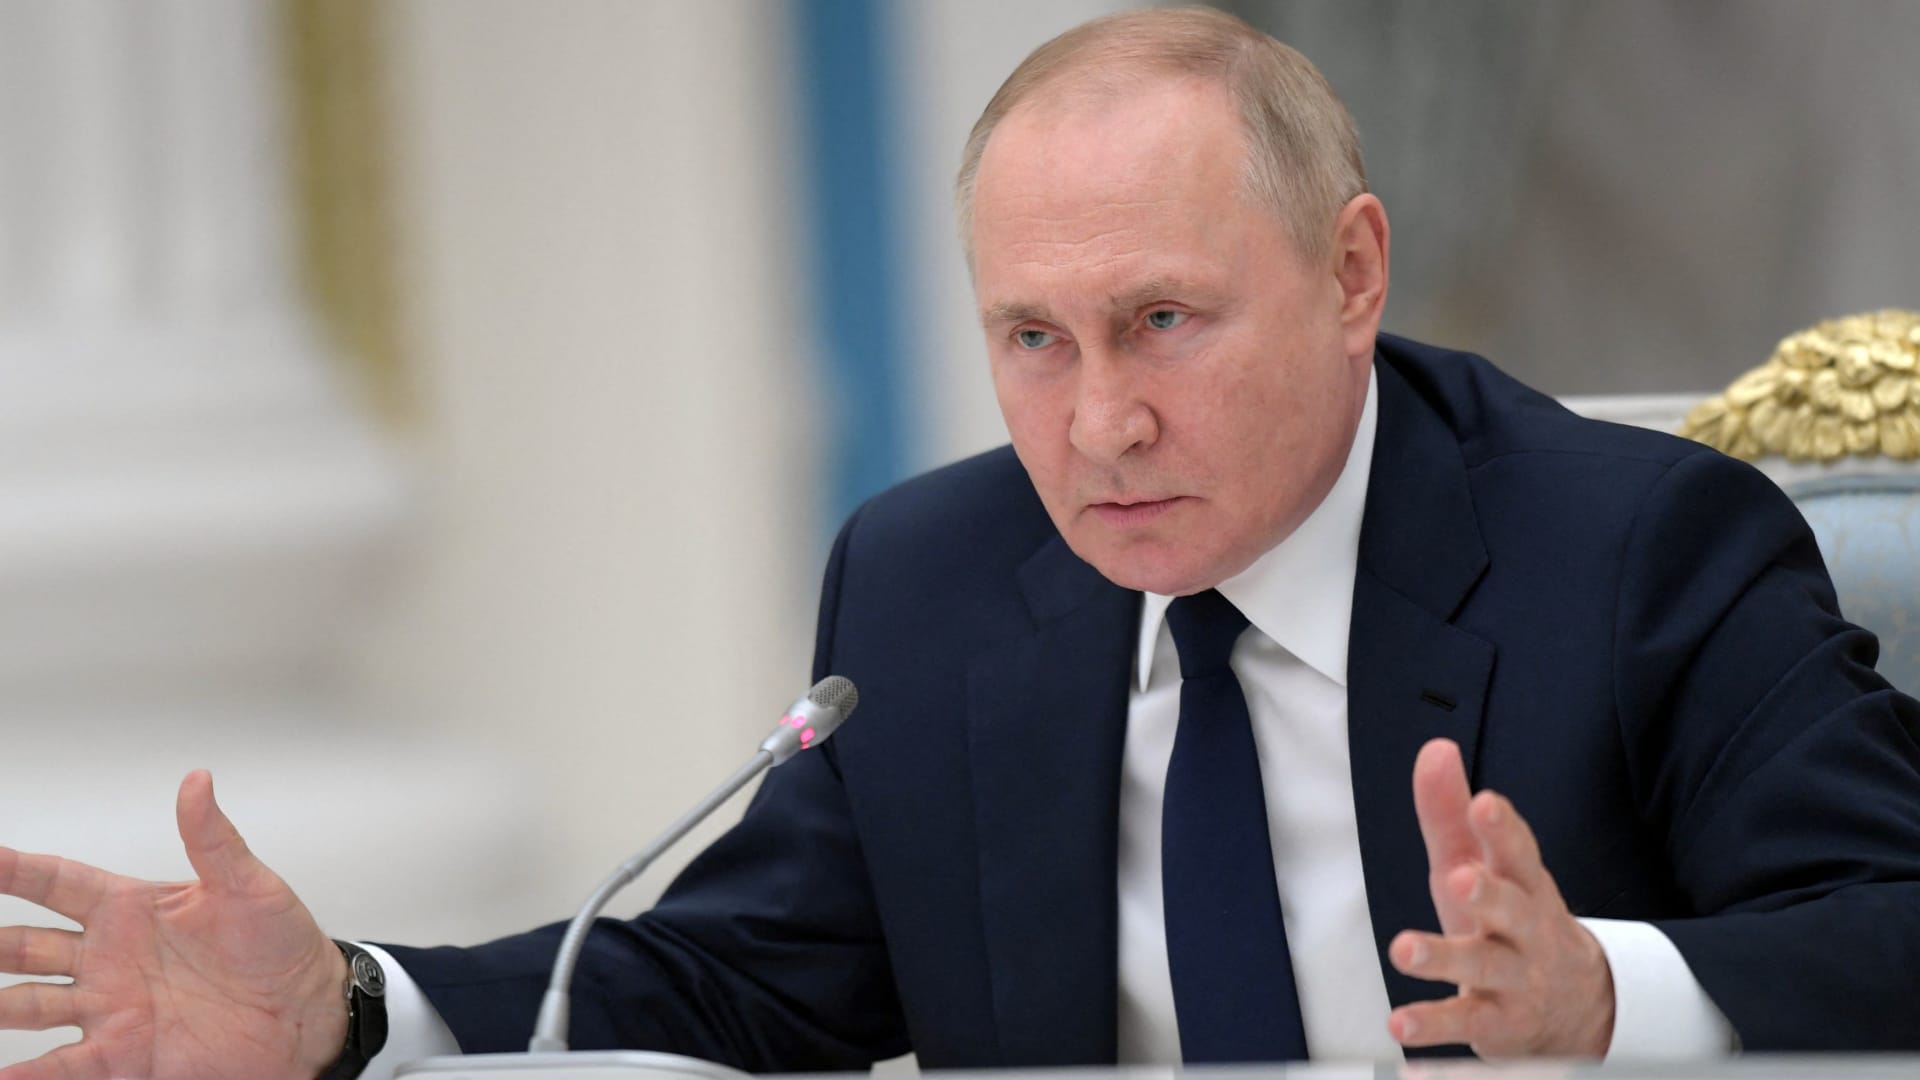 Russia faces ‘economic oblivion’ despite claims of short-term resilience, economists say